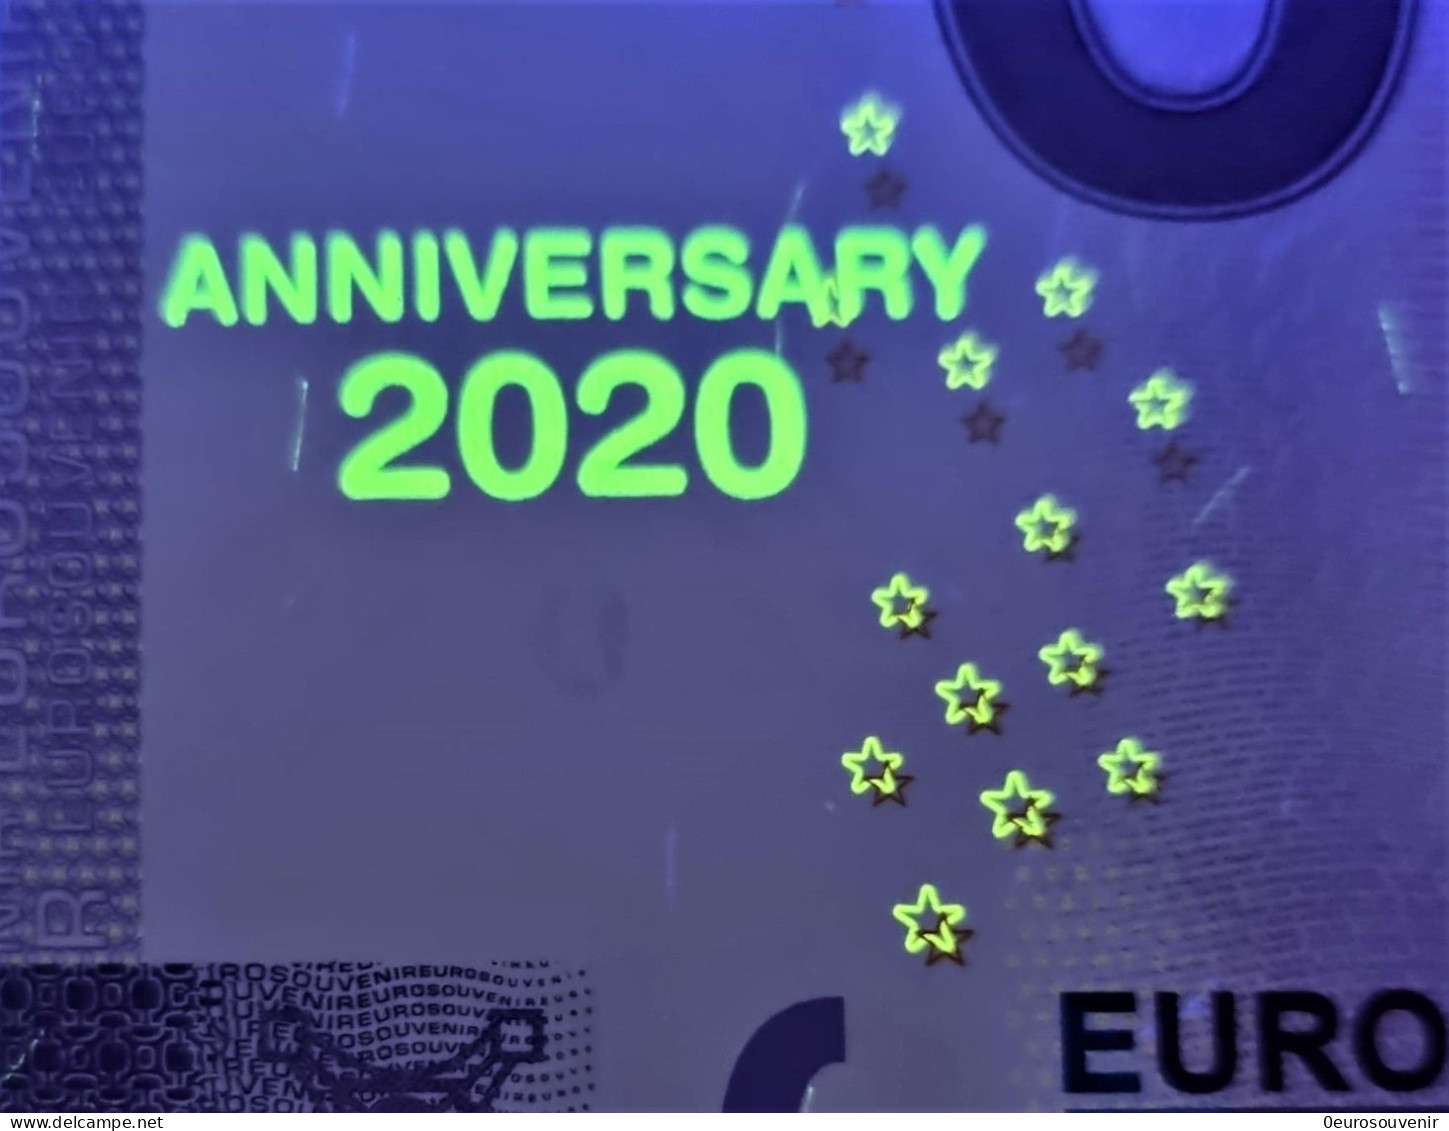 0-Euro PEBC 2020-1 BANKBILJET UIT HET HUWELIJKSJAAR  Set NORMAL+ANNIVERSARY - Essais Privés / Non-officiels